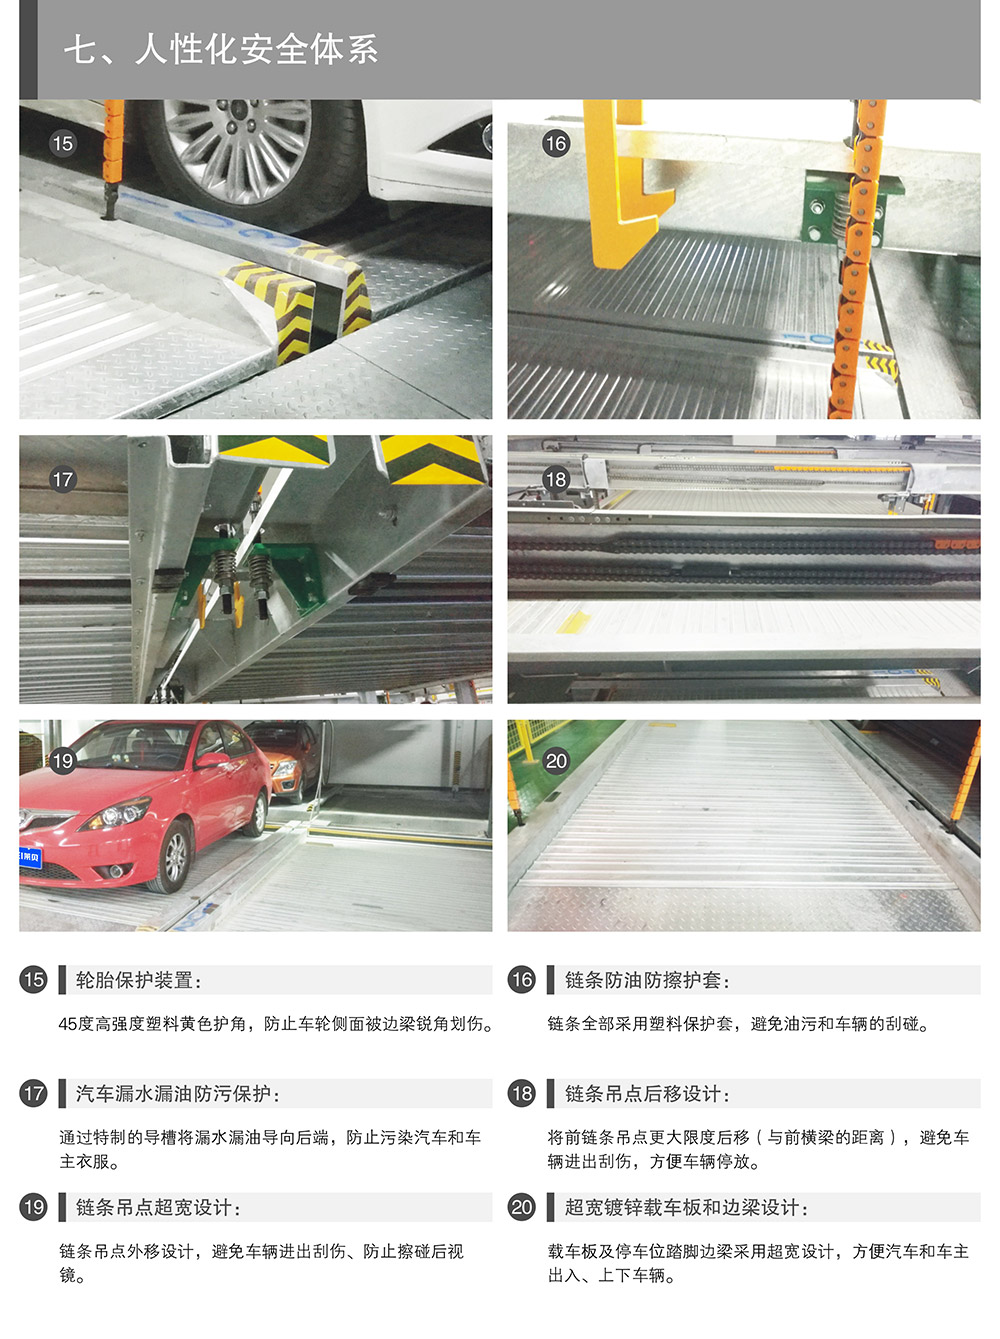 重庆PSH升降横移立体停车设备人性化安全体系.jpg